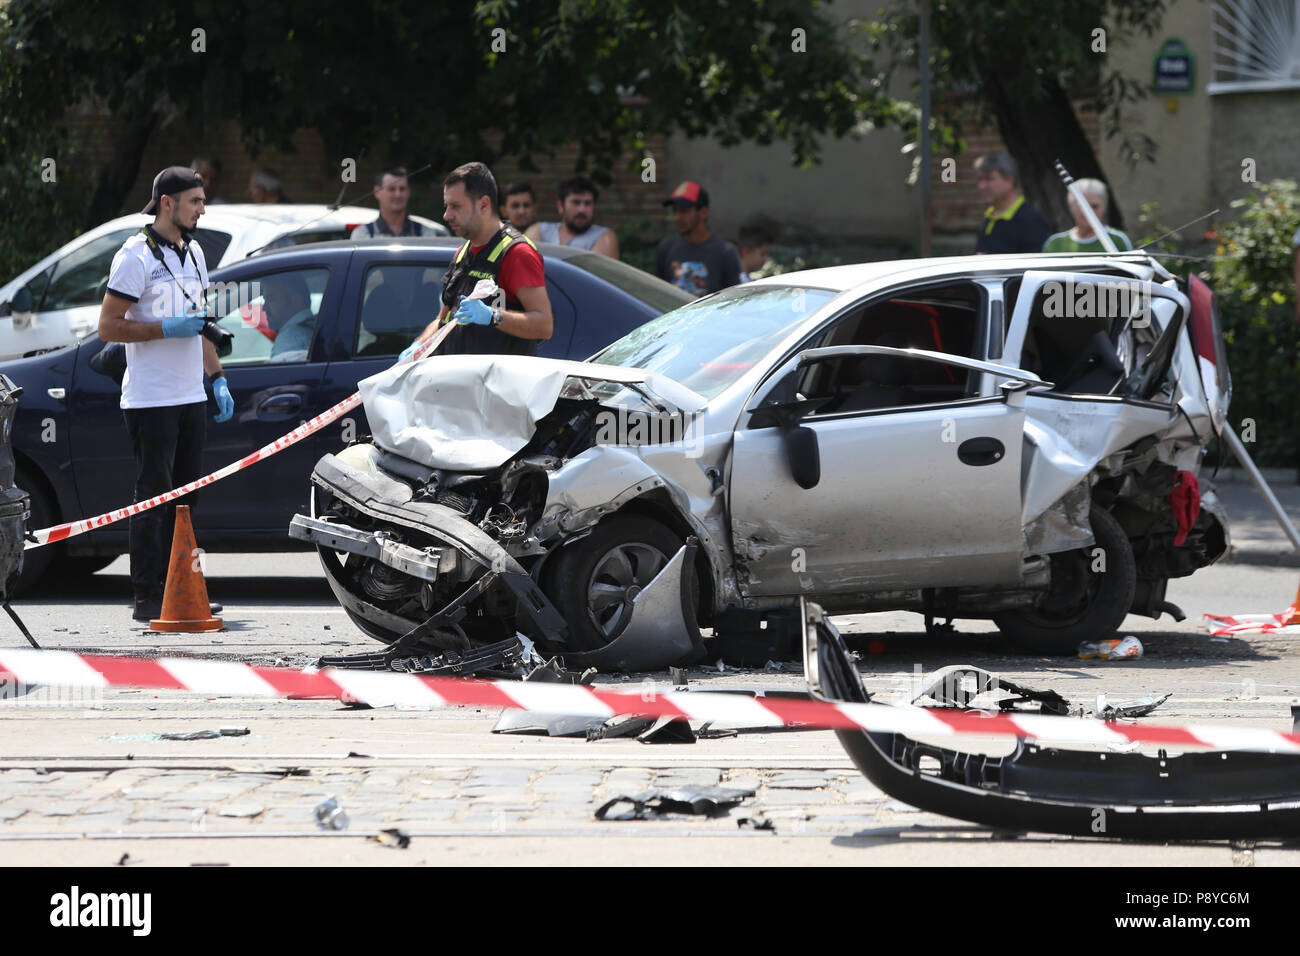 Bucarest, Rumania - 13 de julio: varios vehículos dañados en la carretera después de un accidente de coche colectivo, el 13 de julio Foto de stock